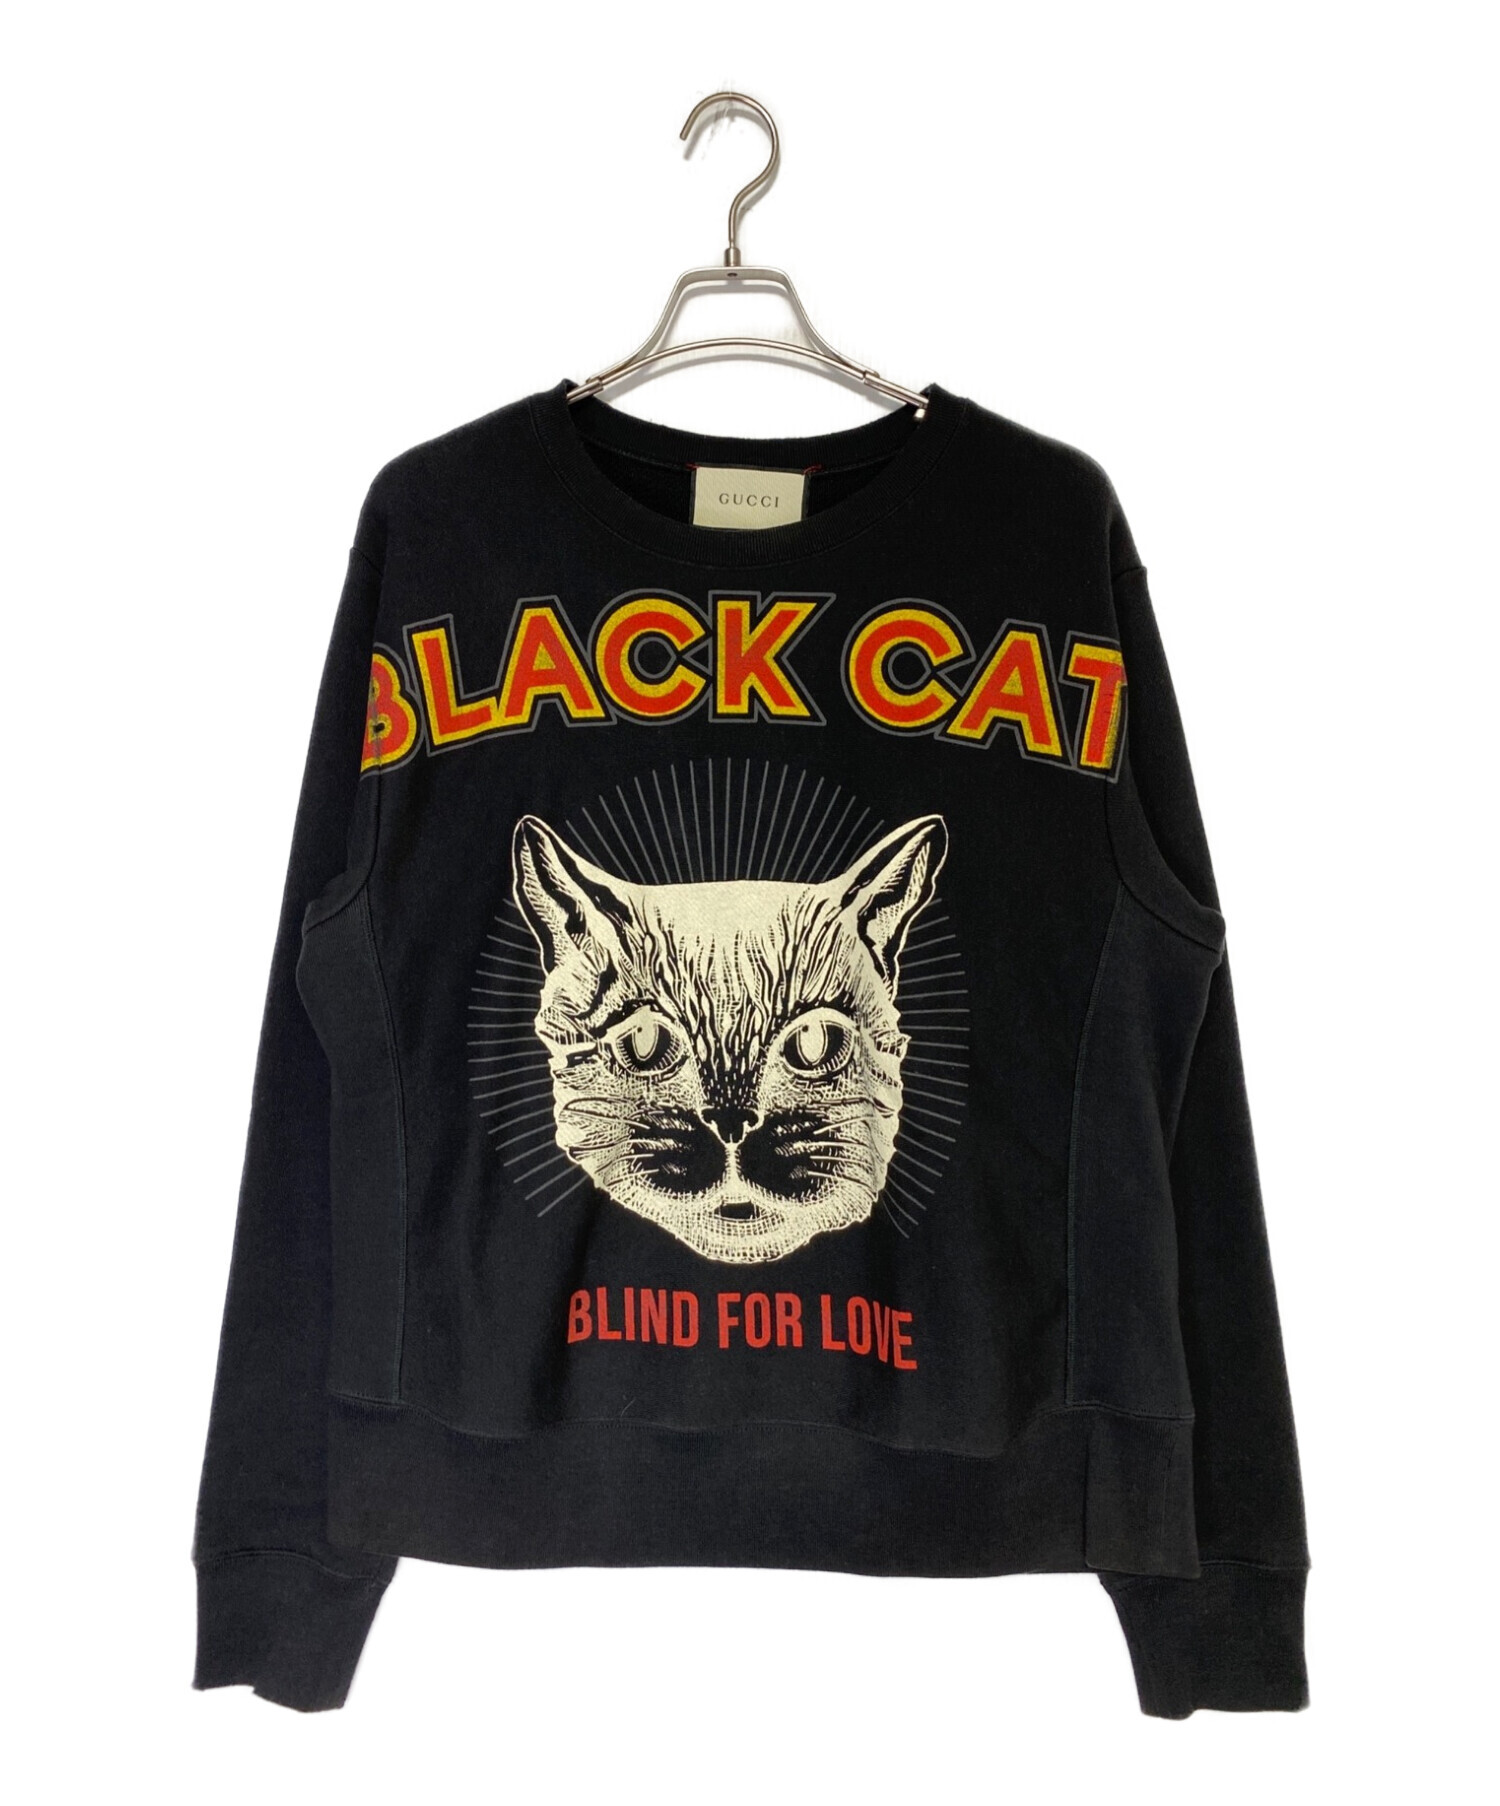 GUCCI (グッチ) Black Cat Sweatshirt ブラック サイズ:M